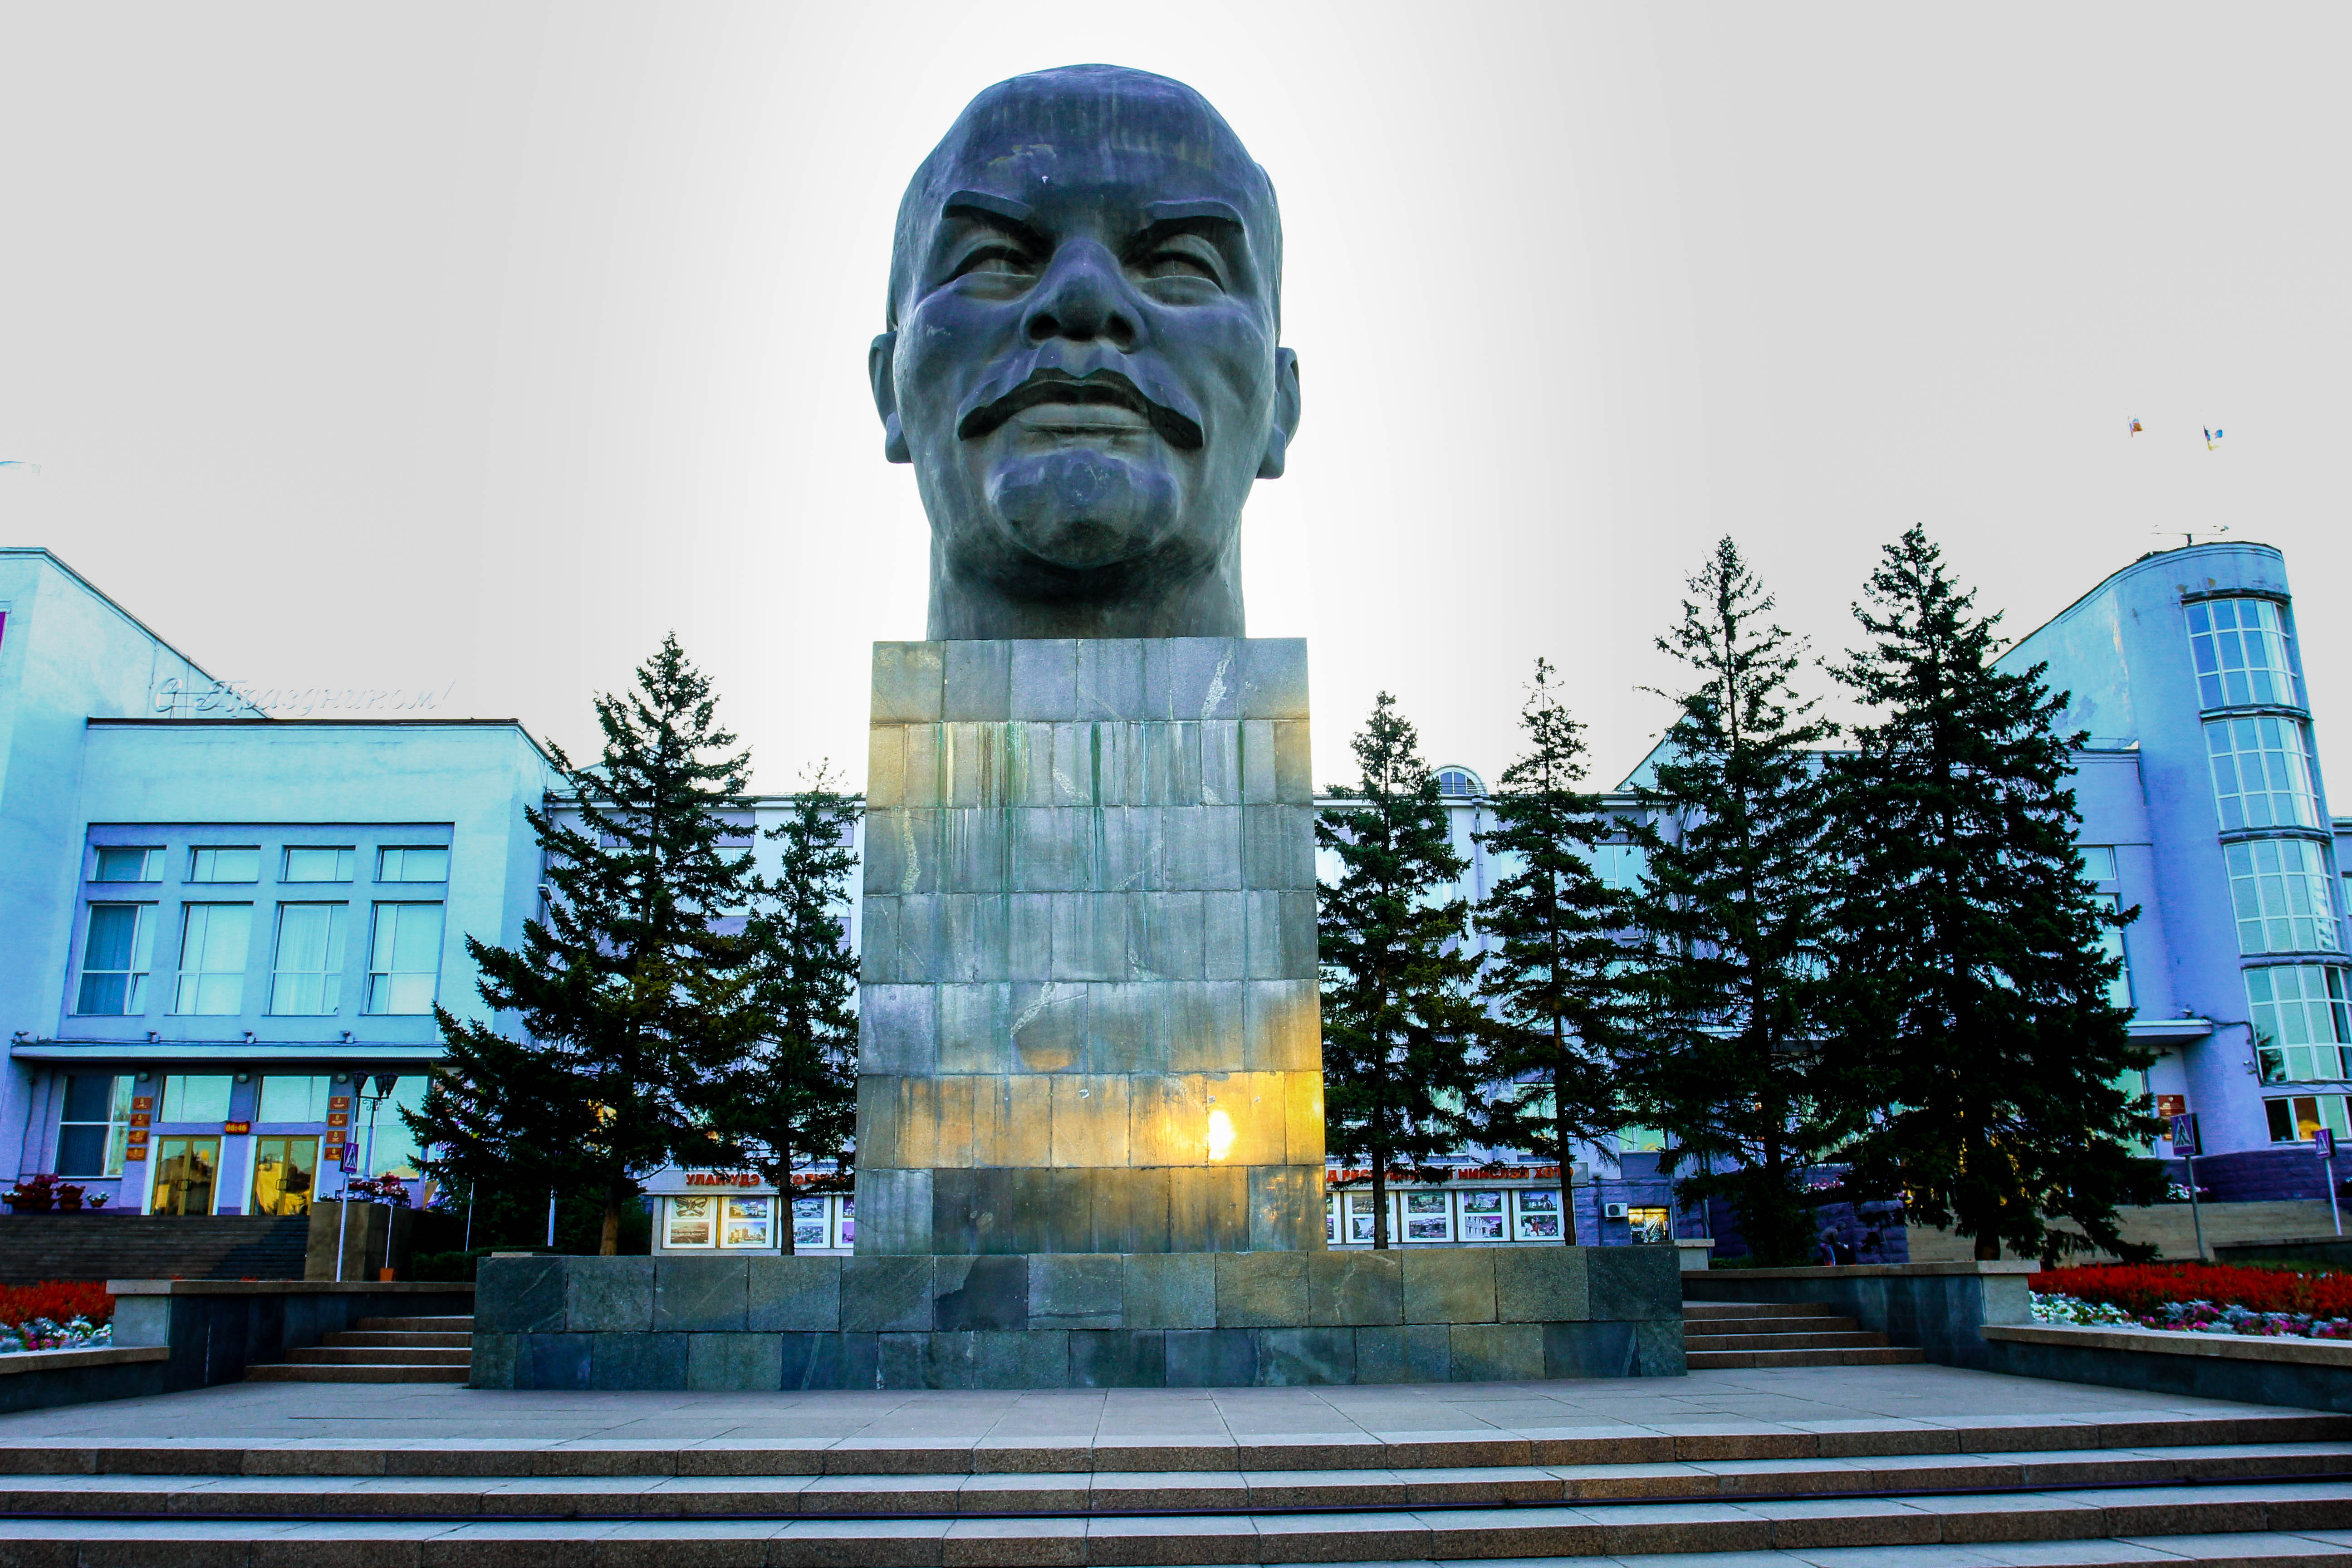 Пожалуй, одной из главных достопримечательностей города Улан-Удэ является огромная скульптура головы В.И. Ленина, установленная на центральной площади. 